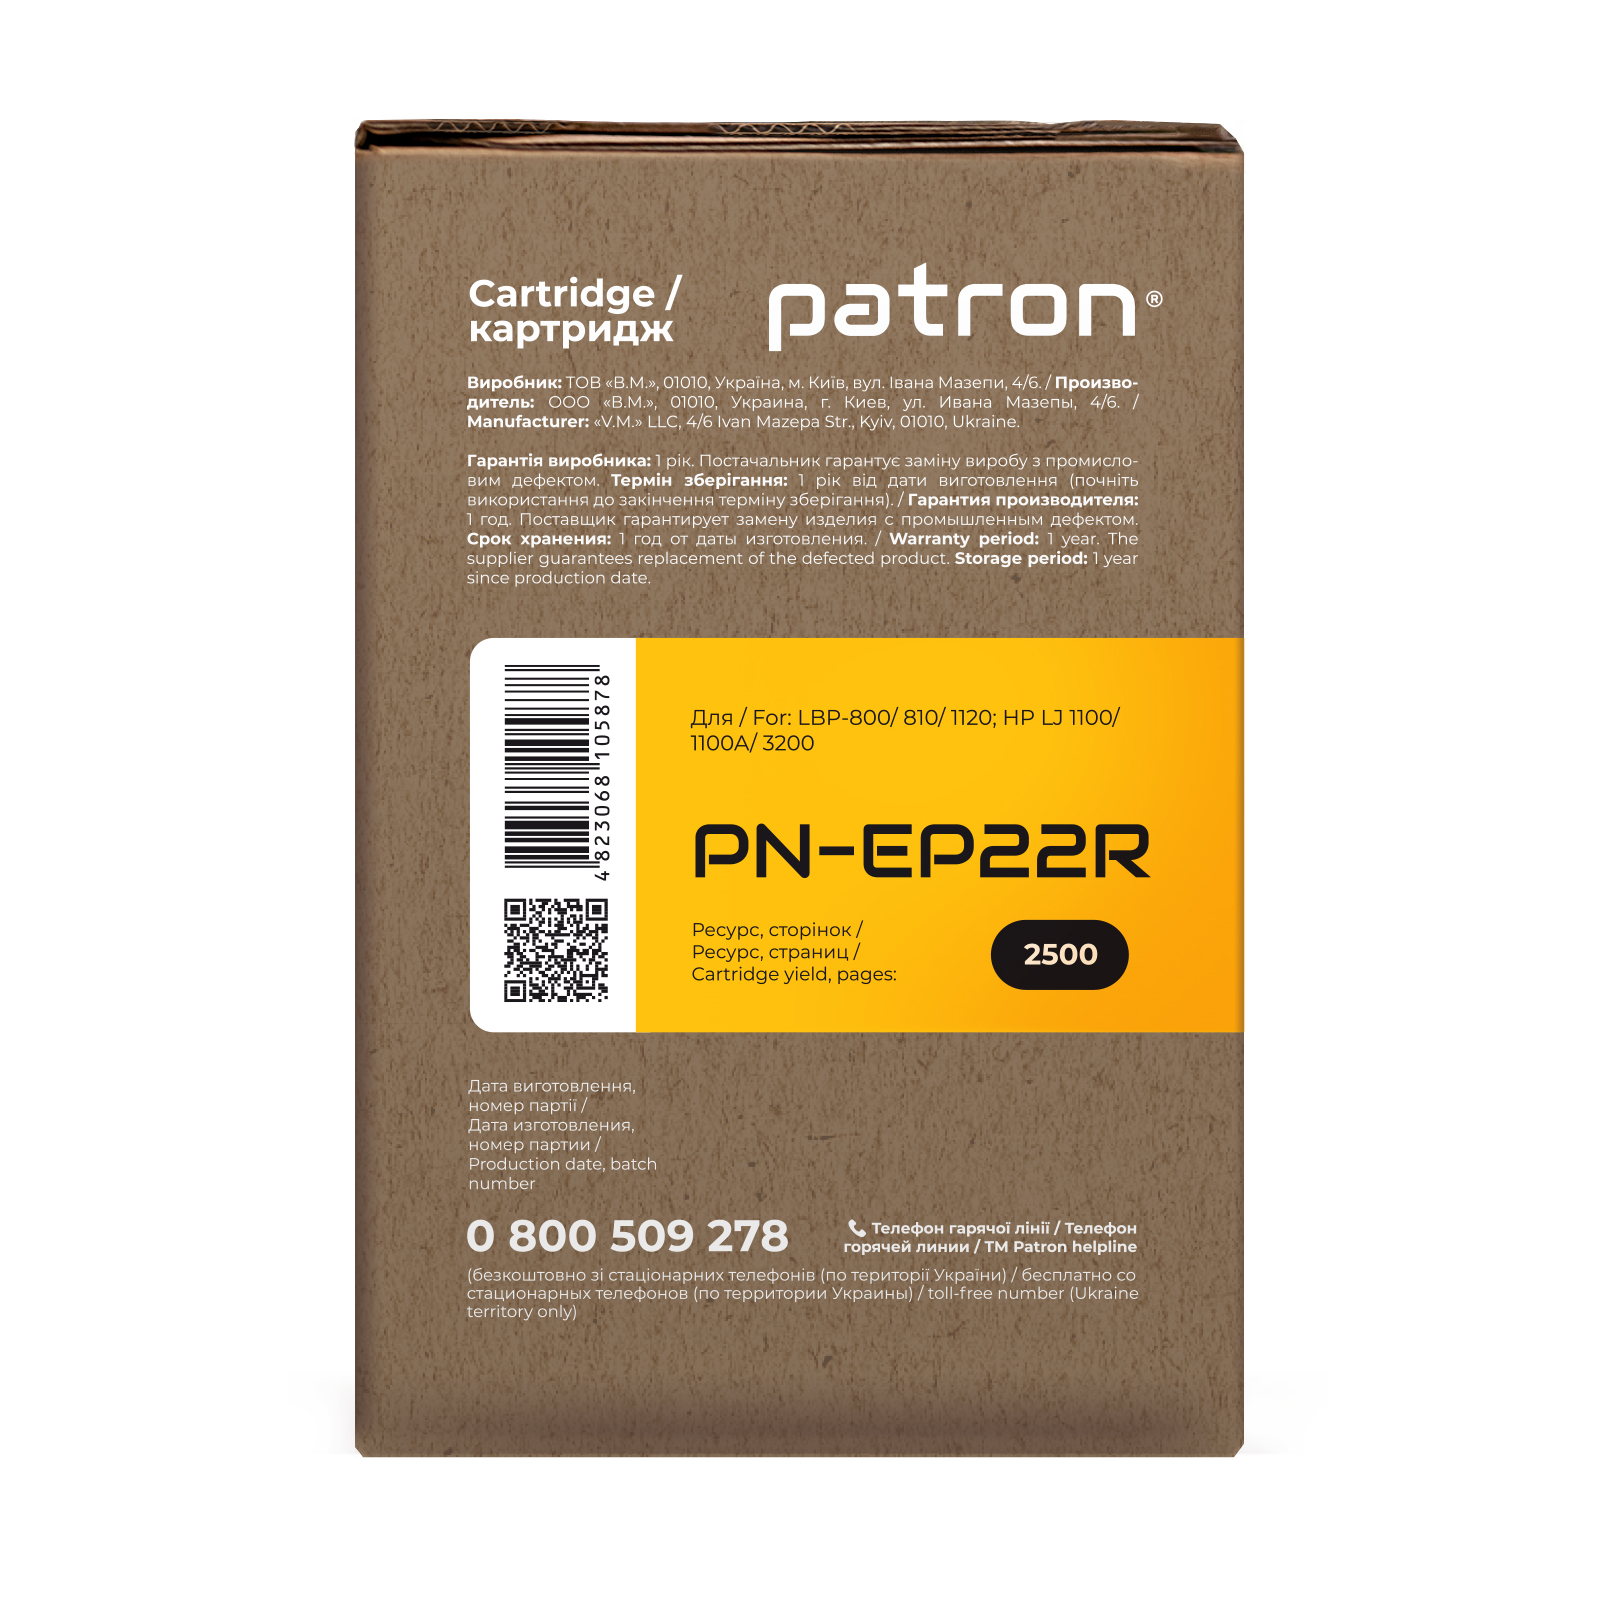 Картридж Patron CANON EP-22 Extra (PN-EP22R) изображение 3